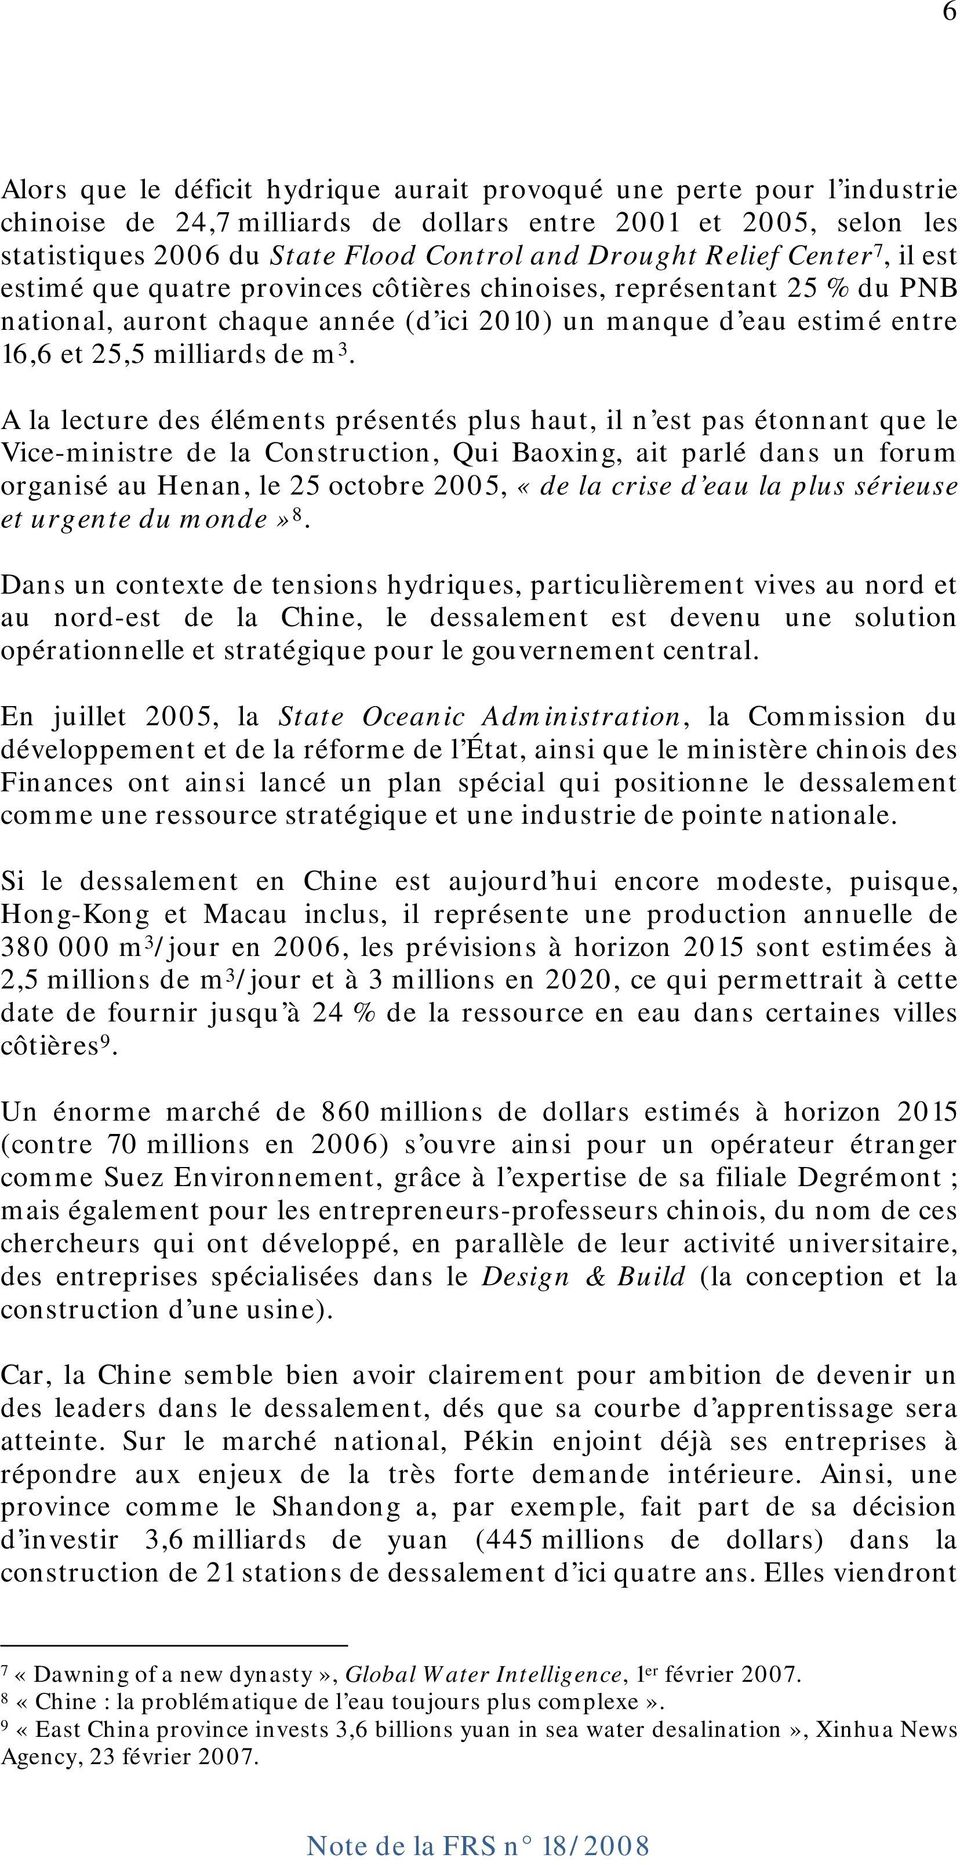 A la lecture des éléments présentés plus haut, il n est pas étonnant que le Vice-ministre de la Construction, Qui Baoxing, ait parlé dans un forum organisé au Henan, le 25 octobre 2005, «de la crise